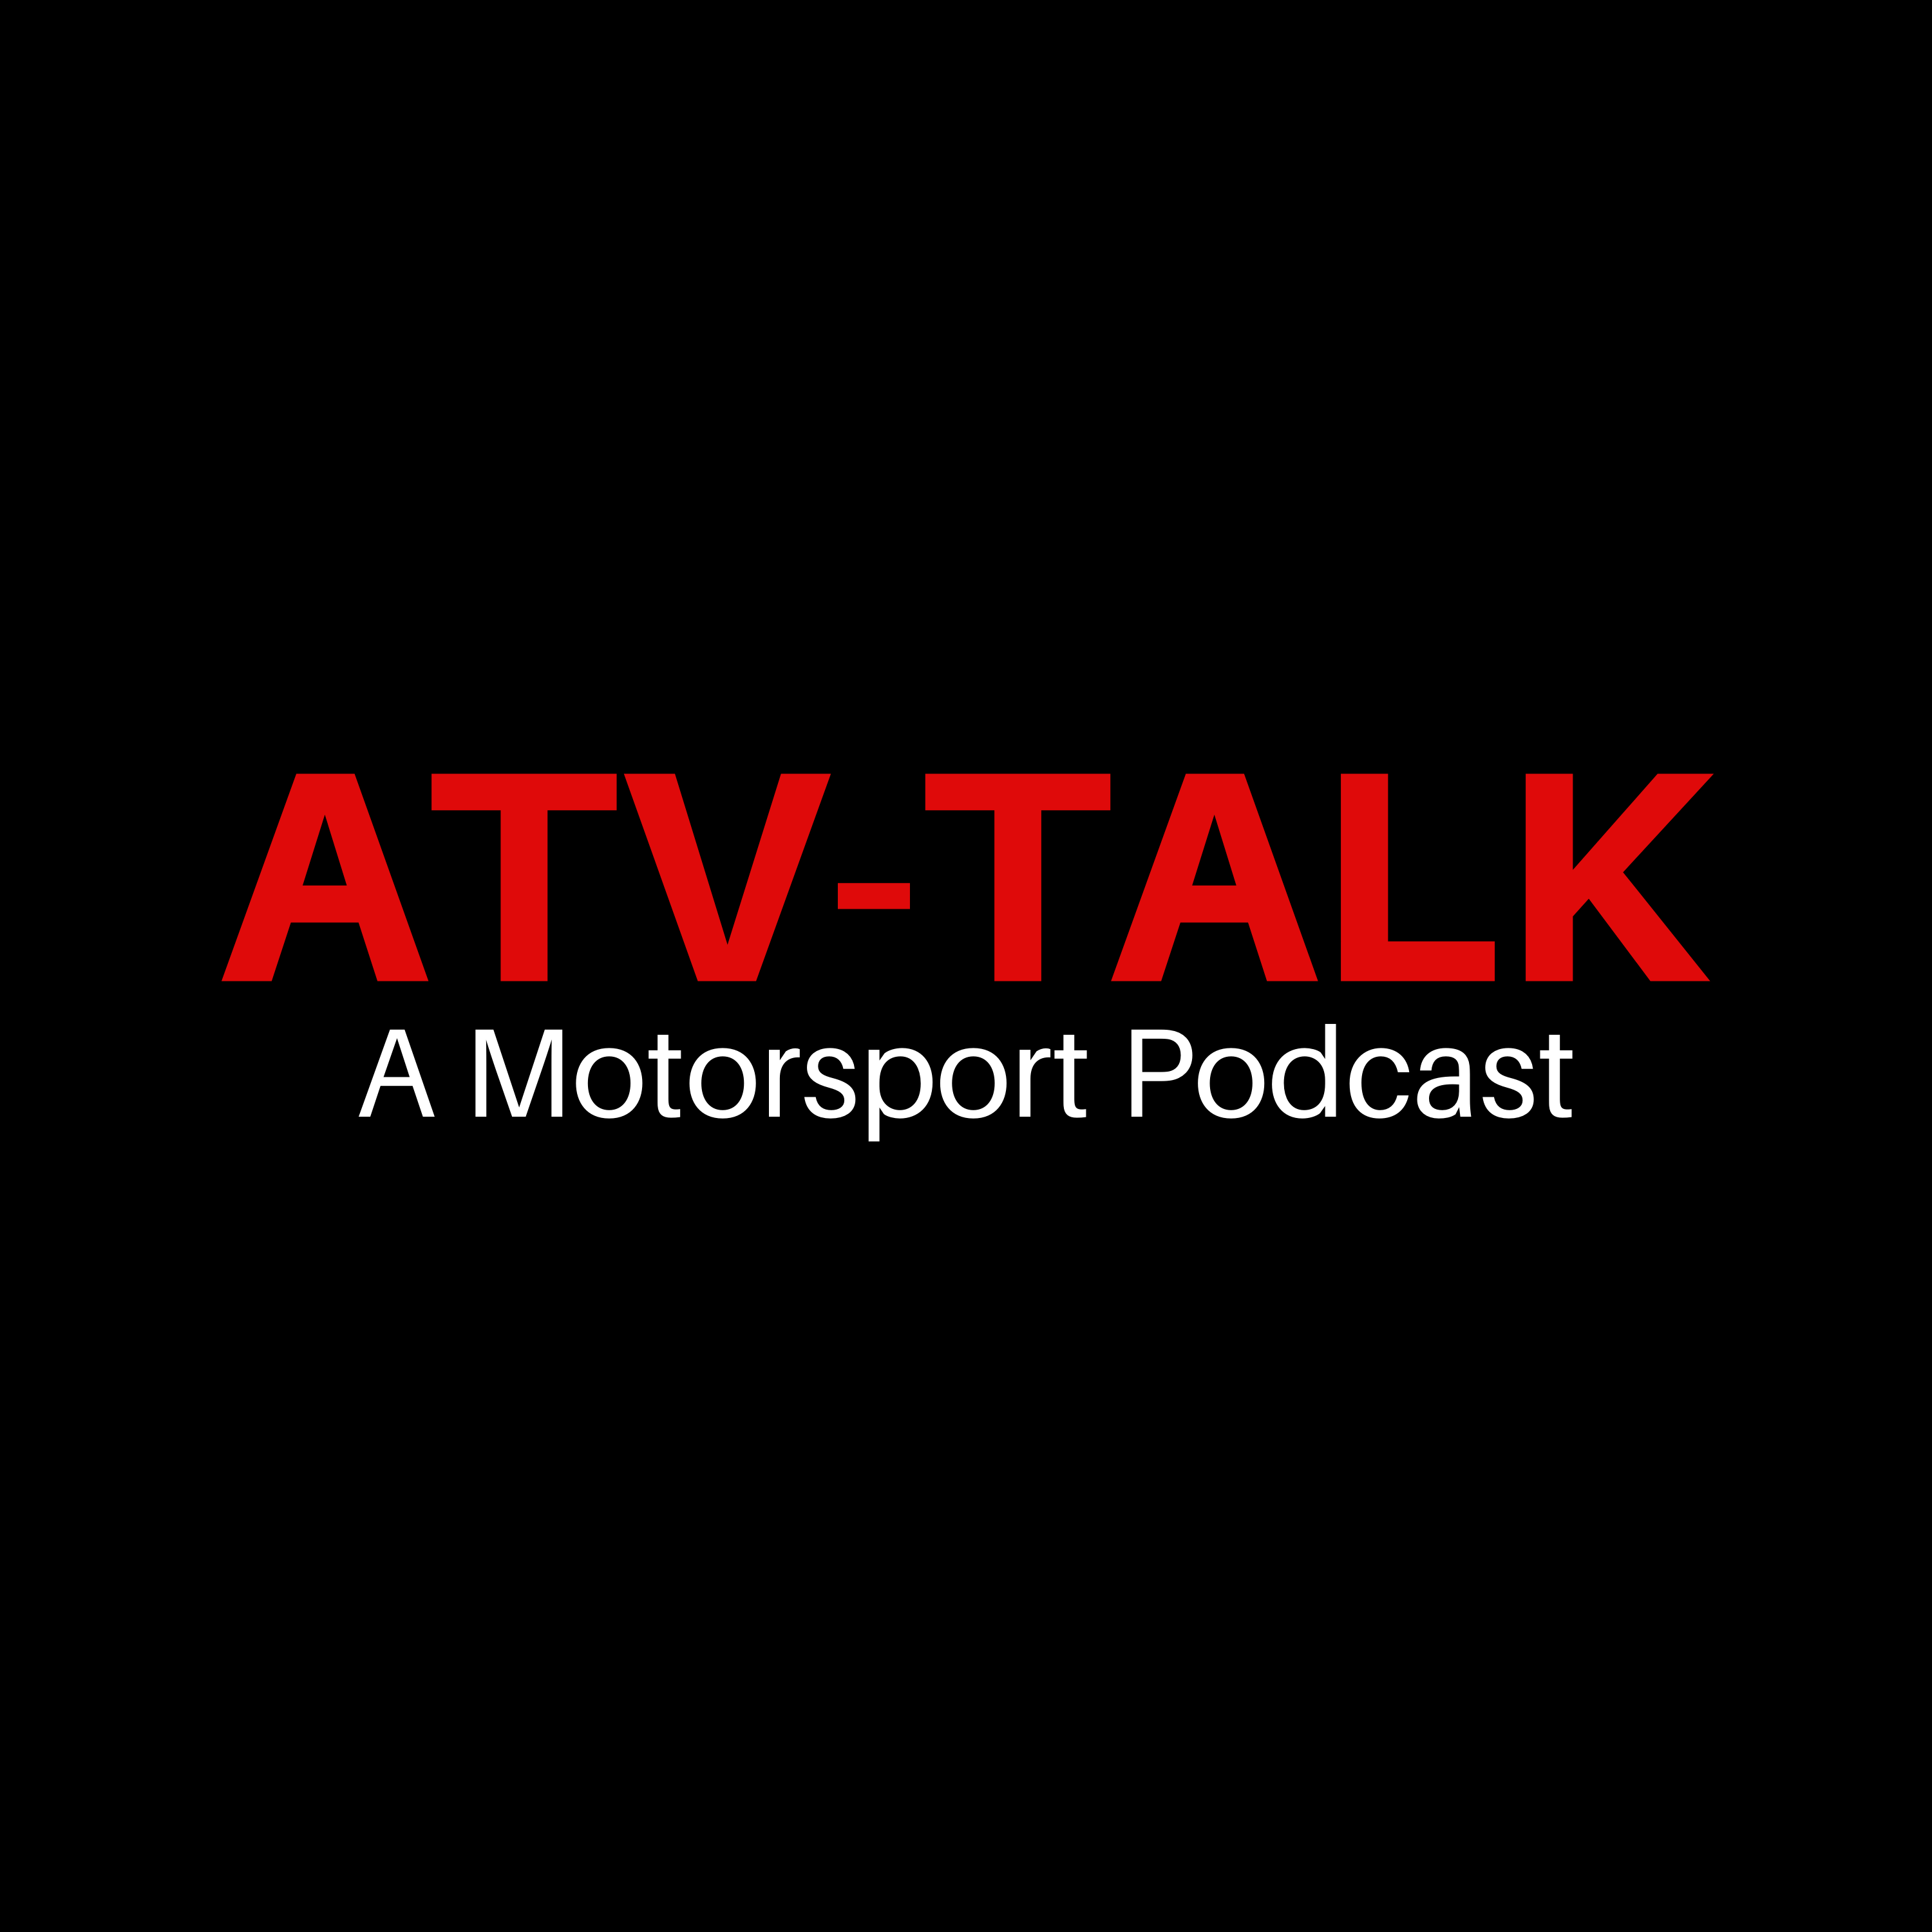 ATV-TALK a Motorsport Podcast